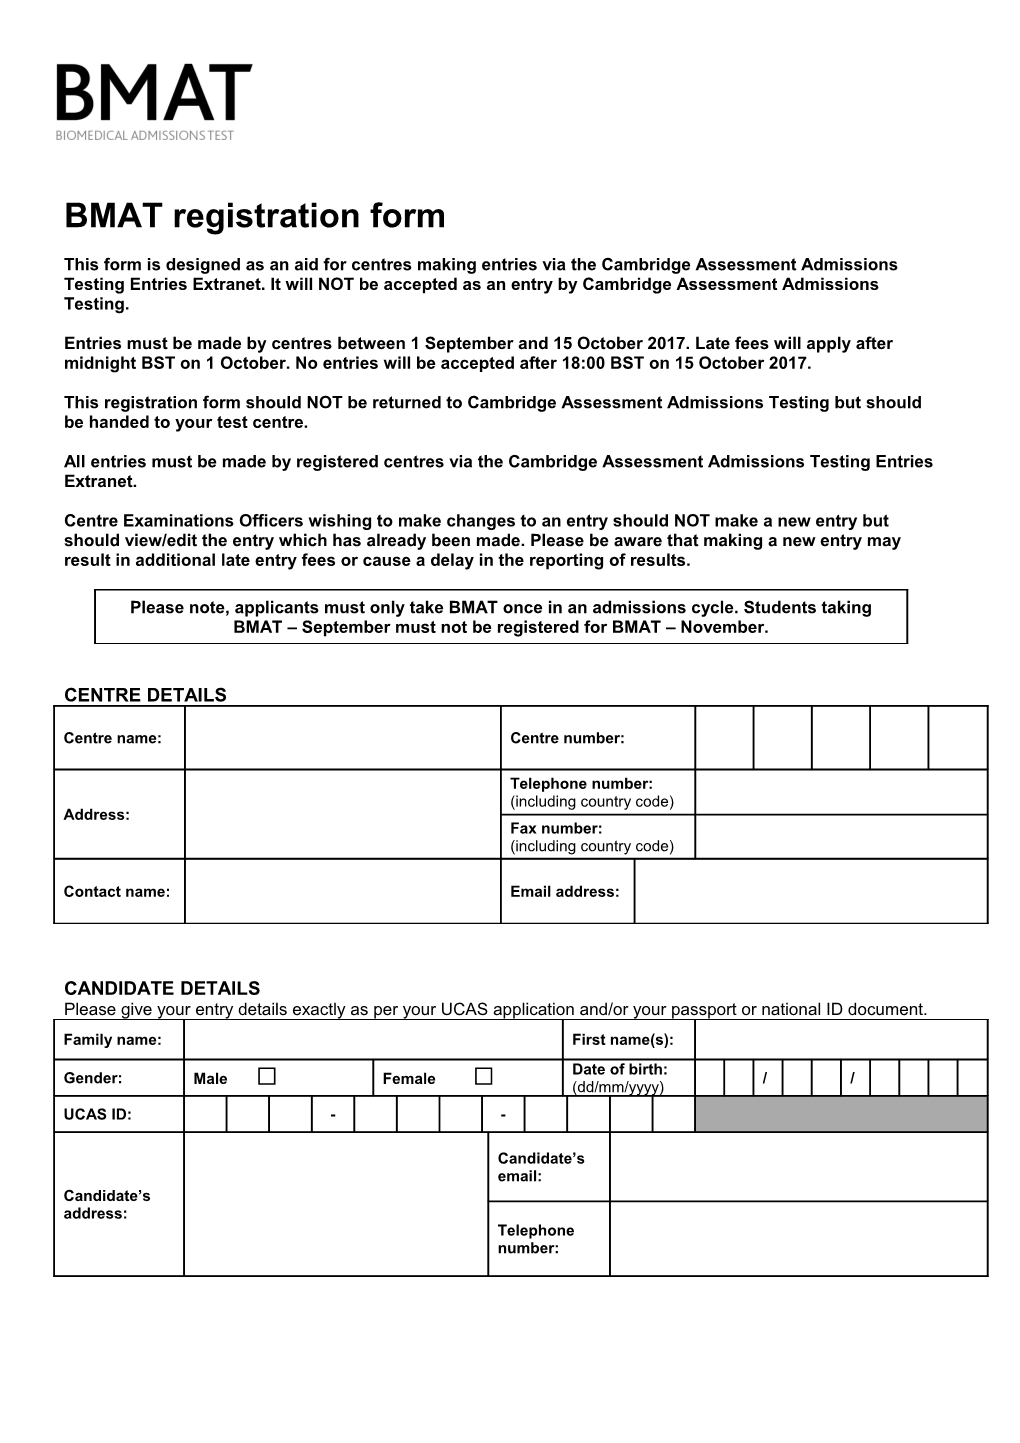 BMAT Registration Form